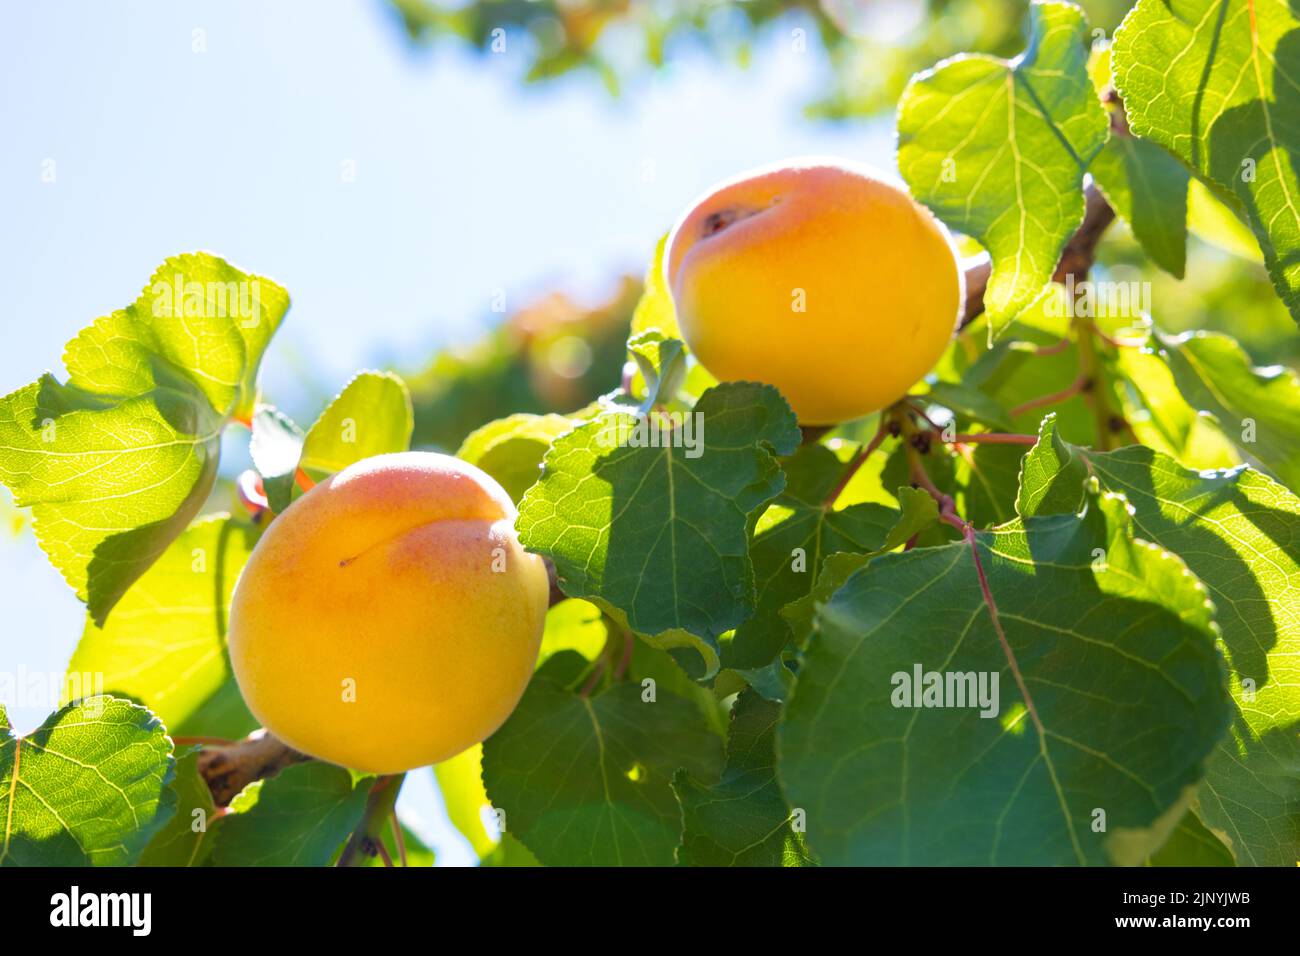 Bio-Aprikosenproduktion. Aprikosen auf dem Baum im Fokus. Vegane Lebensmittel Konzept. Stockfoto